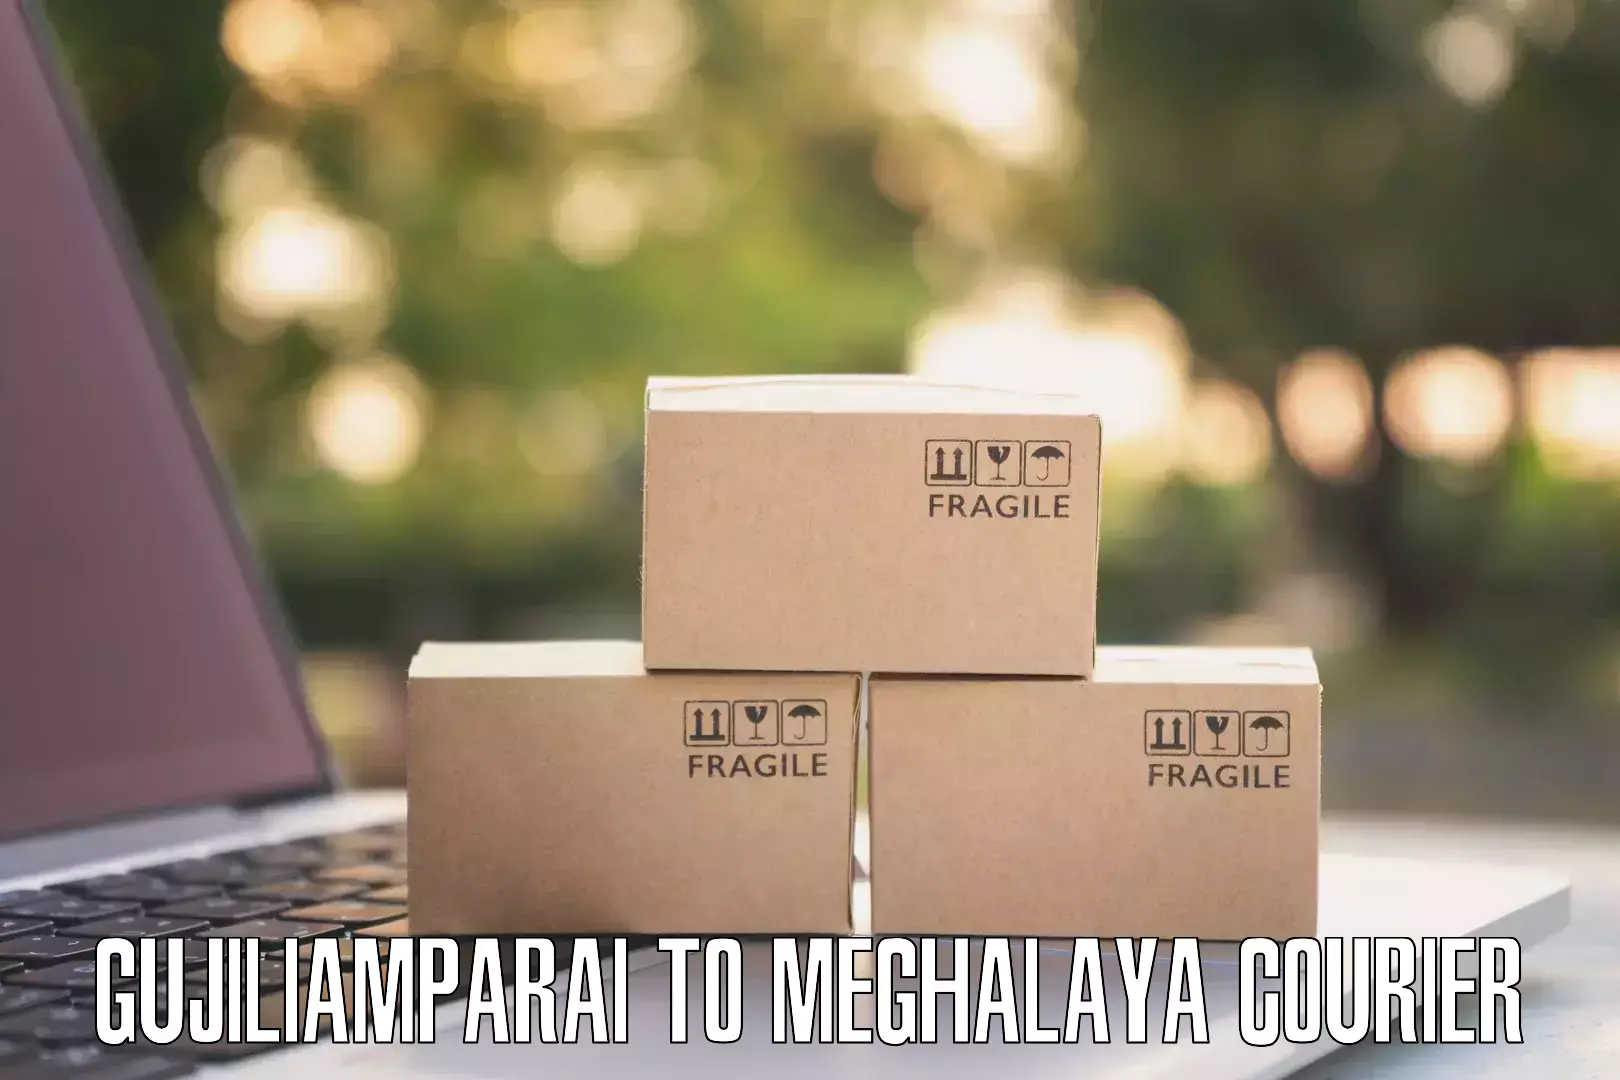 Easy access courier services in Gujiliamparai to Tikrikilla